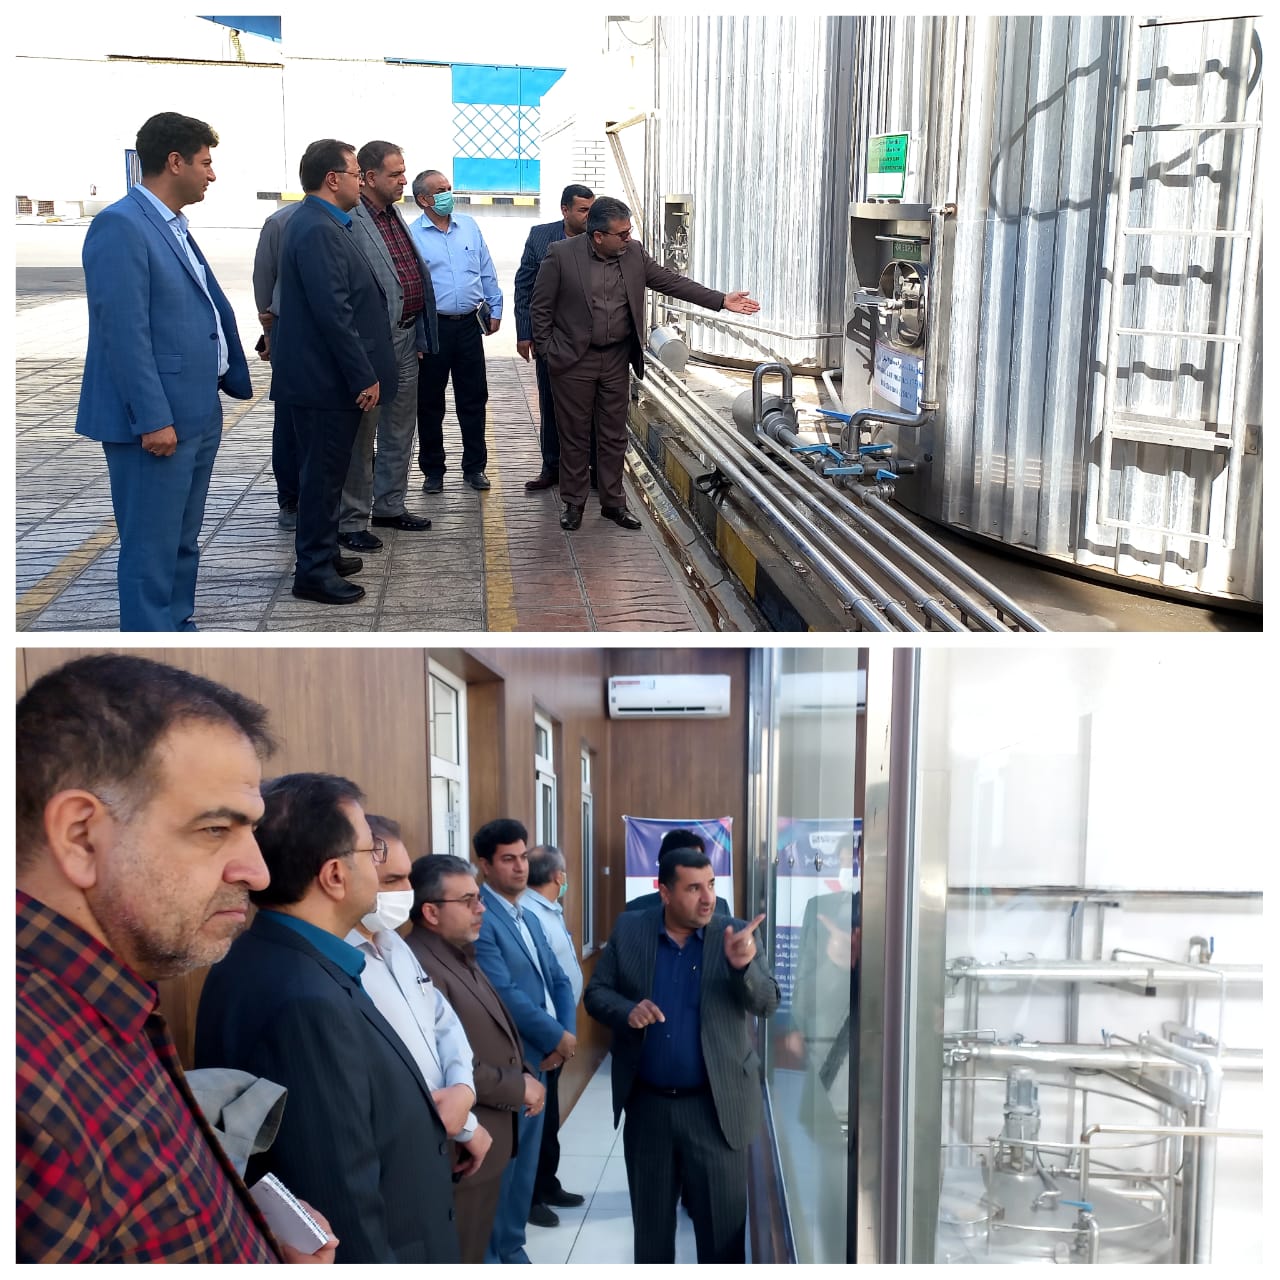 بازدید معاون تشخیص و درمان سازمان دامپزشکی کشور از یک کارخانه تولید لبنیات در اصفهان